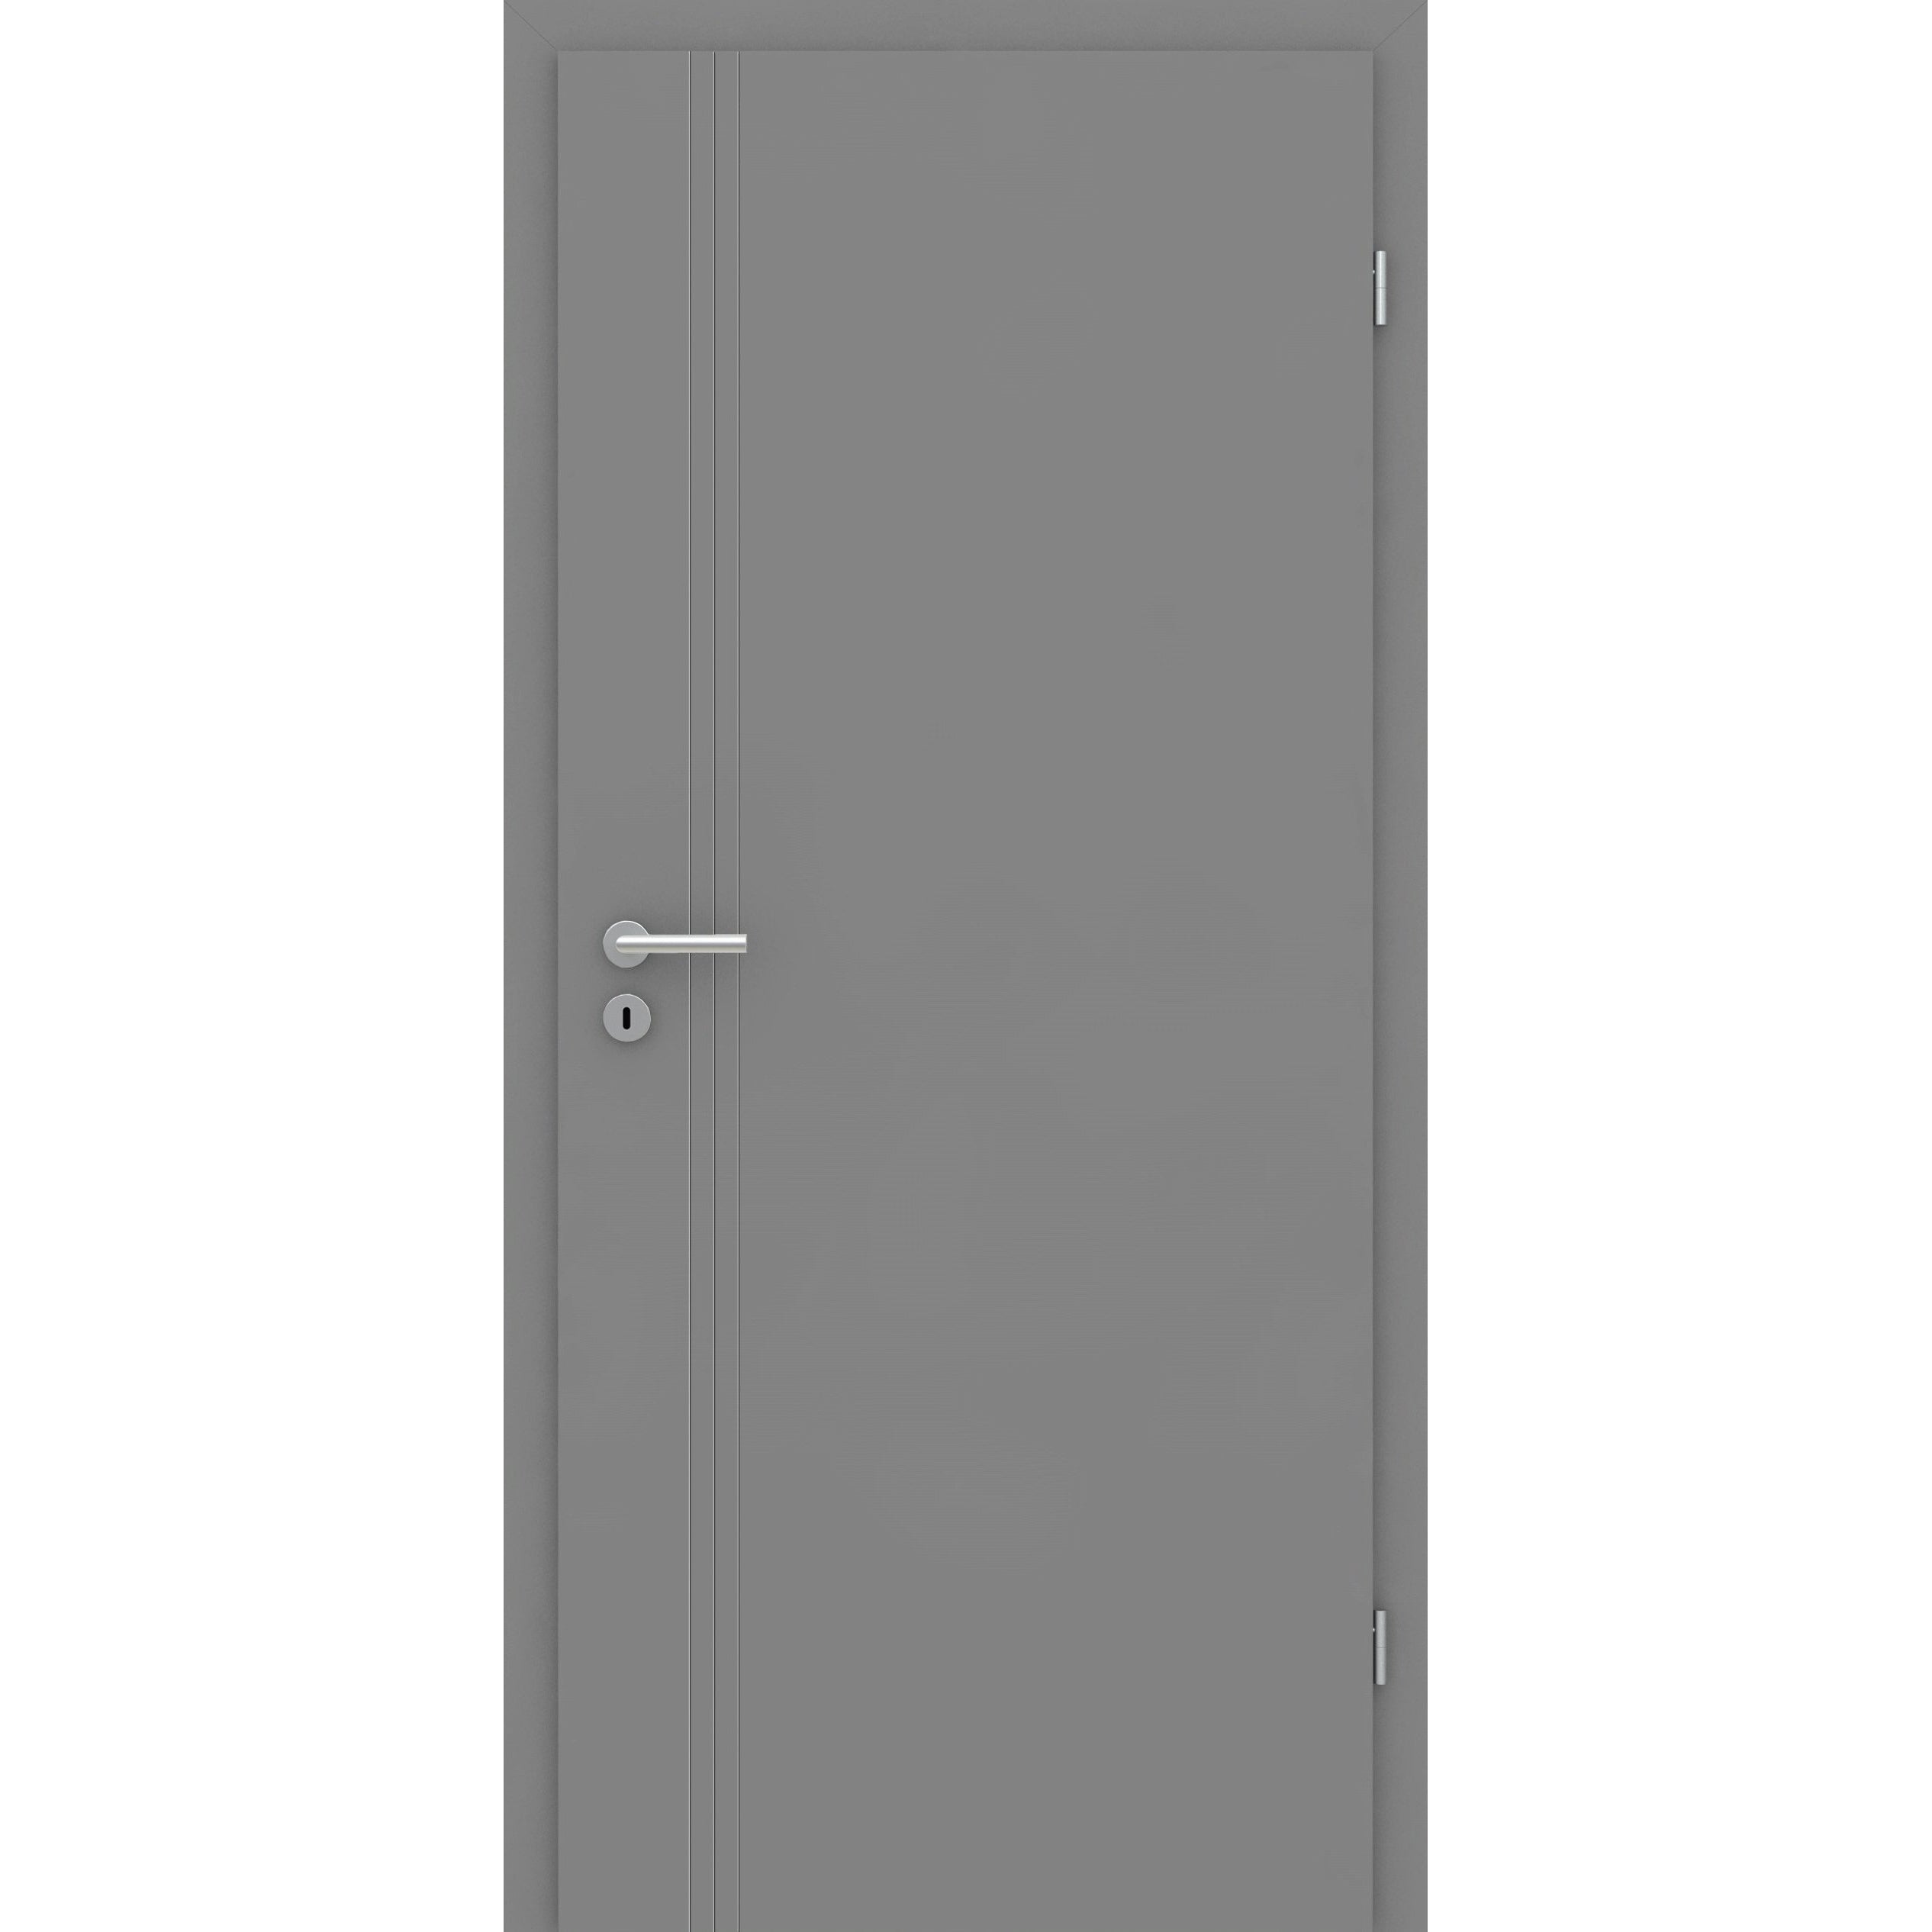 Wohnungseingangstür grau 3 Rillen aufrecht Schlosseite Designkante SK1 / KK3 - Modell Designtür VS37